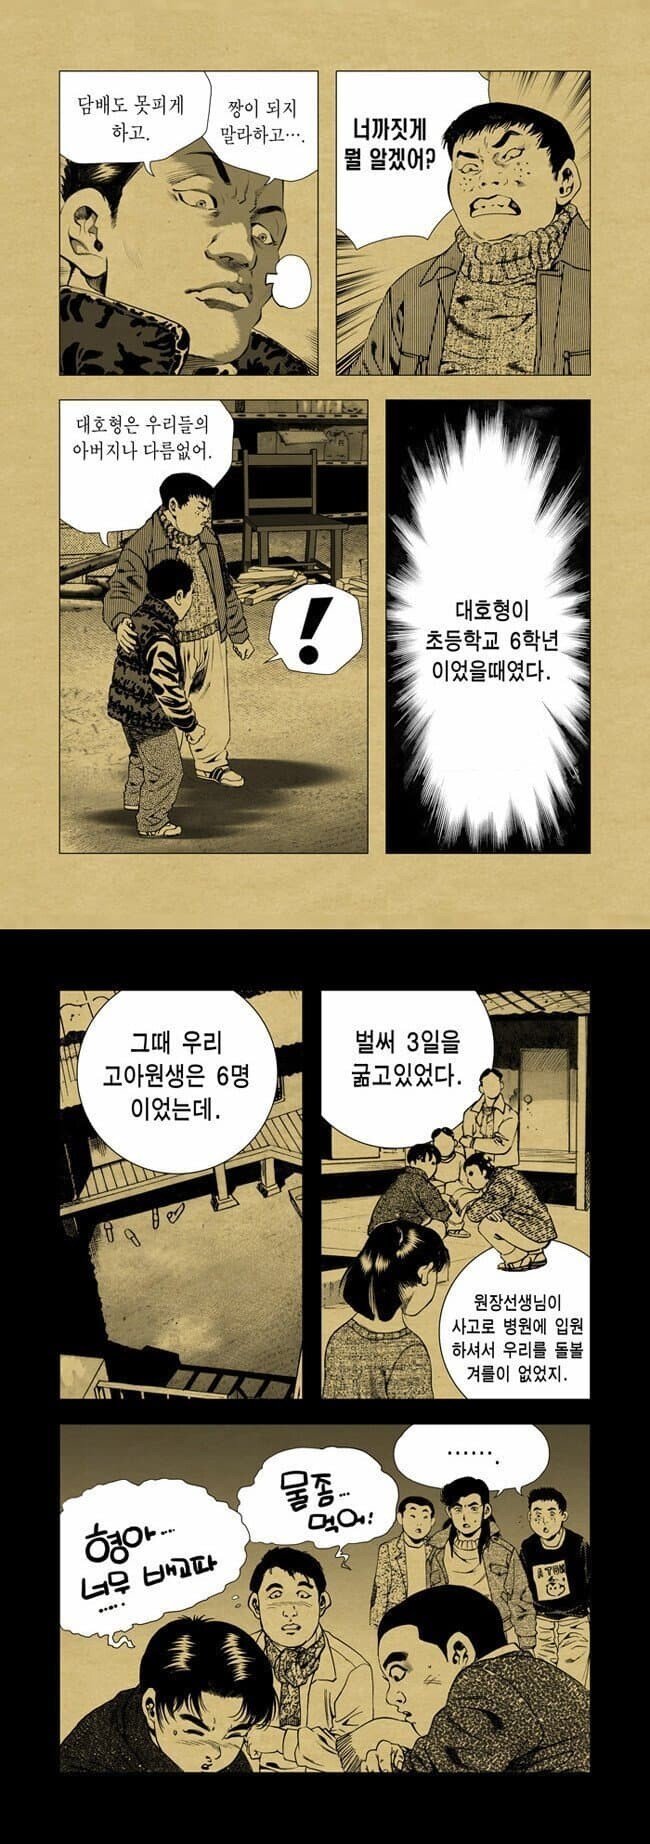 1647916844 (1).jpg 만신 김성모 ㄹㅇ 실화 기반 만화...jpg